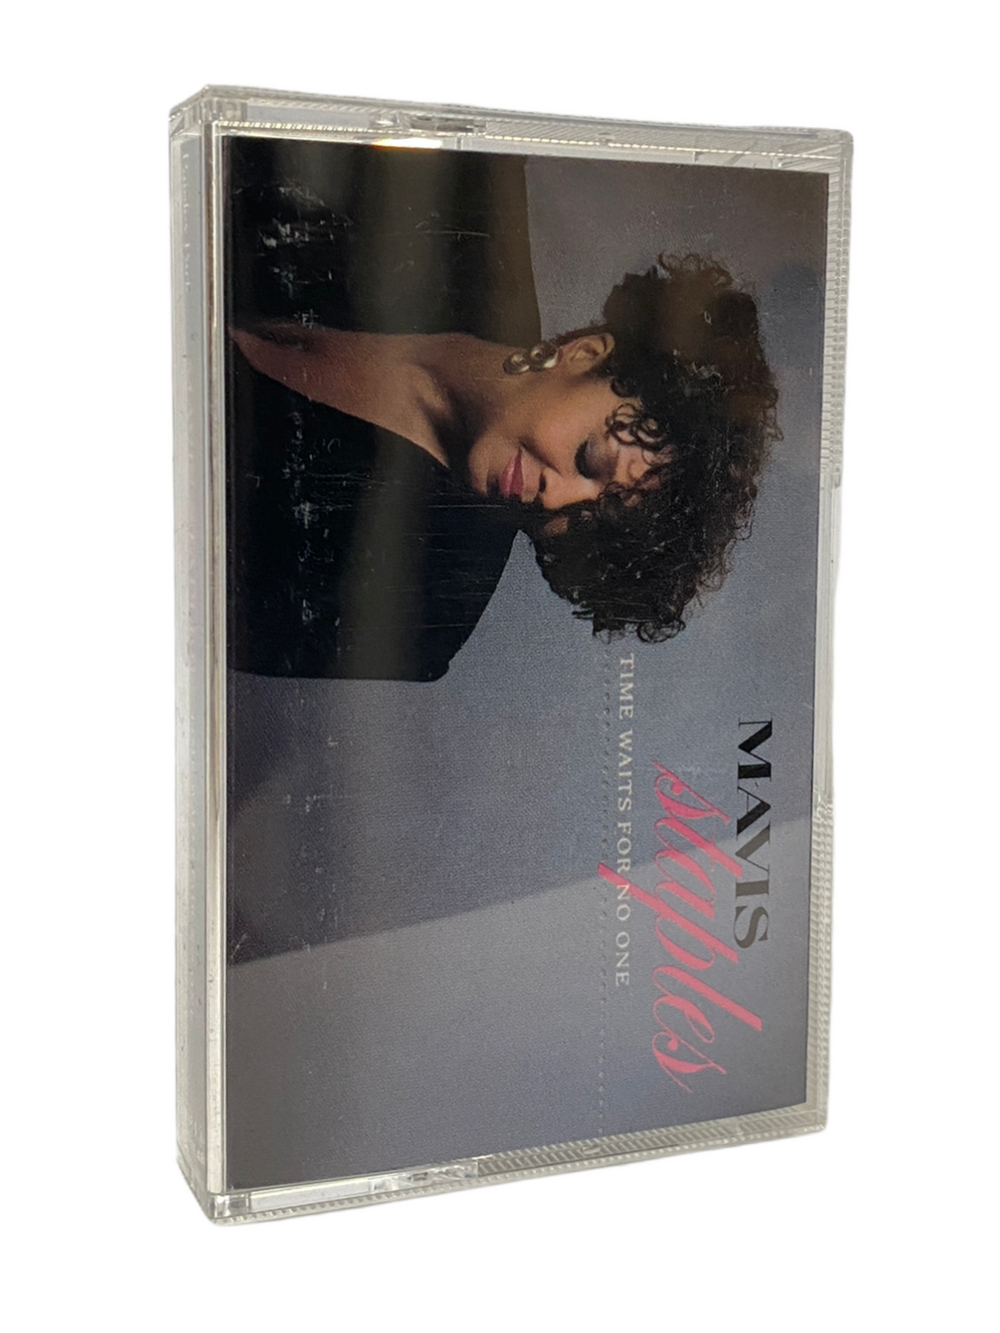 Prince – Mavis Staples Time Waits For No One Original Cassette Tape EU UK 1989 Release Prince